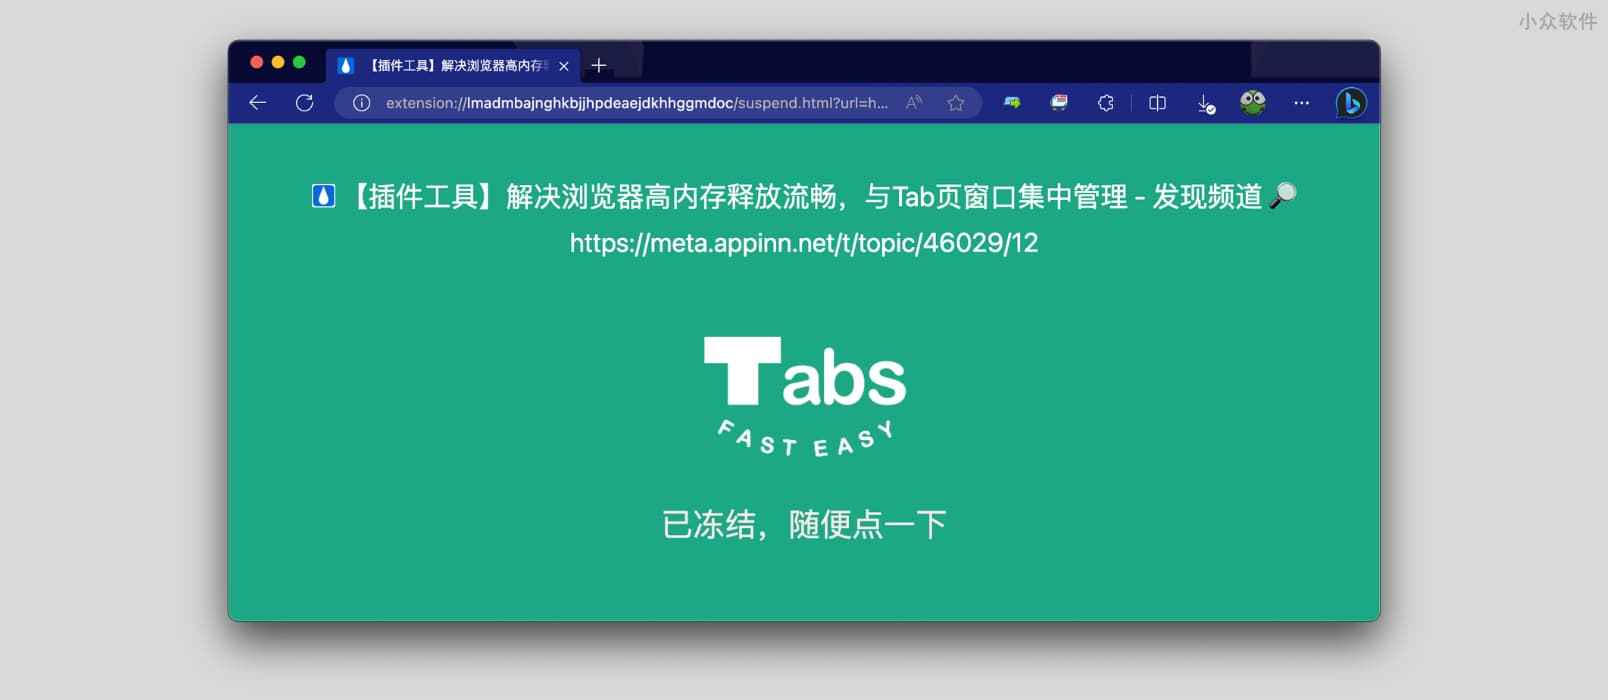 用 Tabs Fast Easy 自动冻结标签页：释放内存，提高流畅度。还能跨窗口跳转标签页[Chrome/Edge]